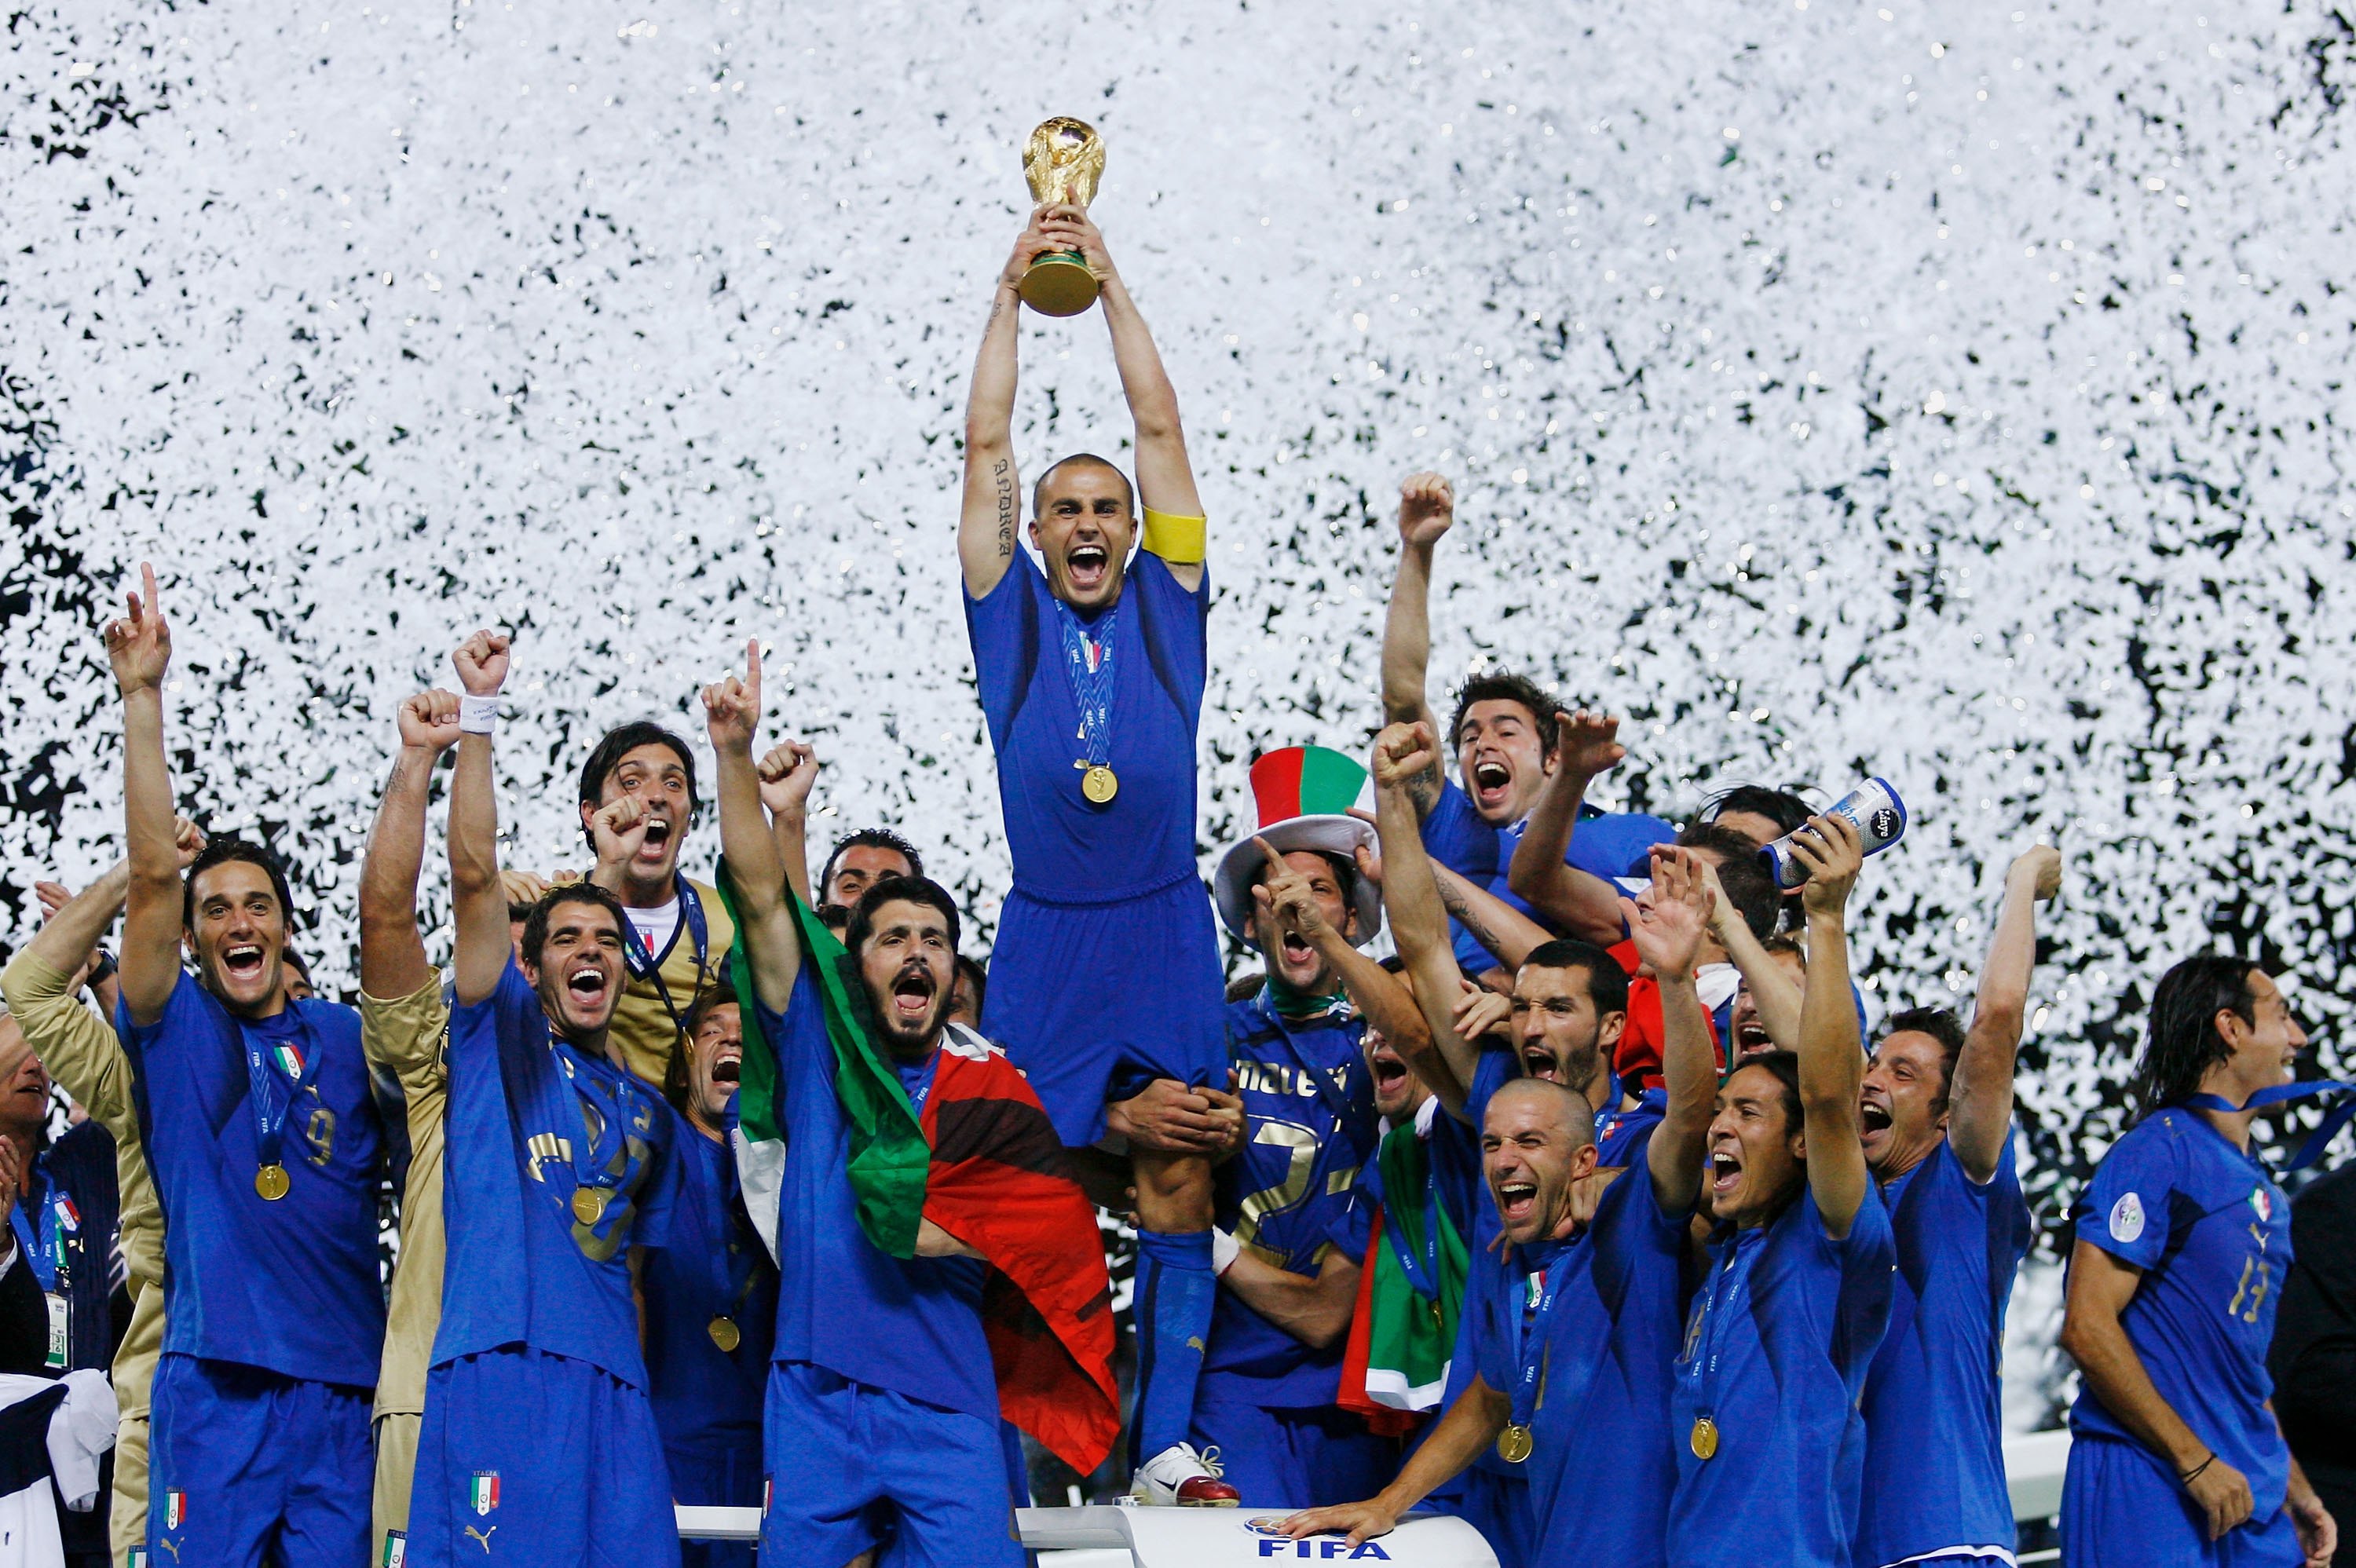 2006 var Italiens år då de vann VM i Tyskland. Lagkaptenen Fabio Cannavaro var tillsammans med Zinedine Zidane turneringens stora utropstecken och fick, som pricken över i'et,  lyfta VM-pokalen.